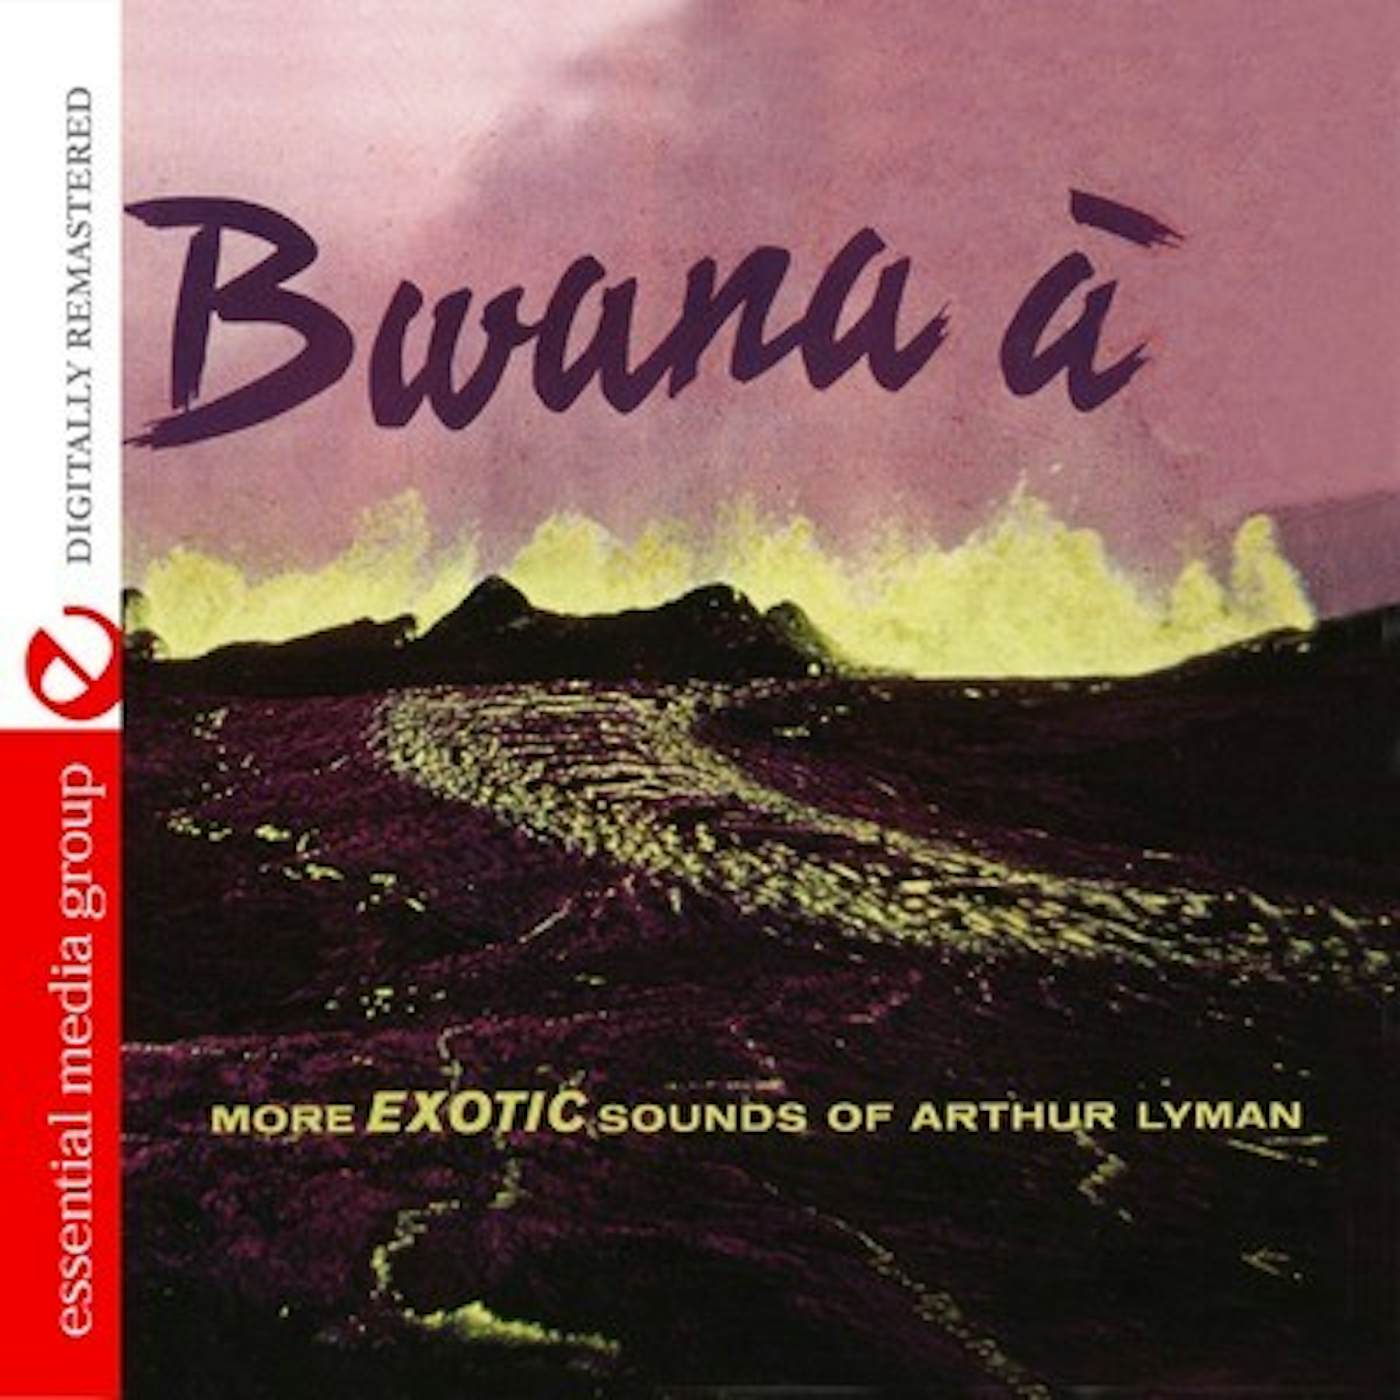 Arthur Lyman BWANA A CD